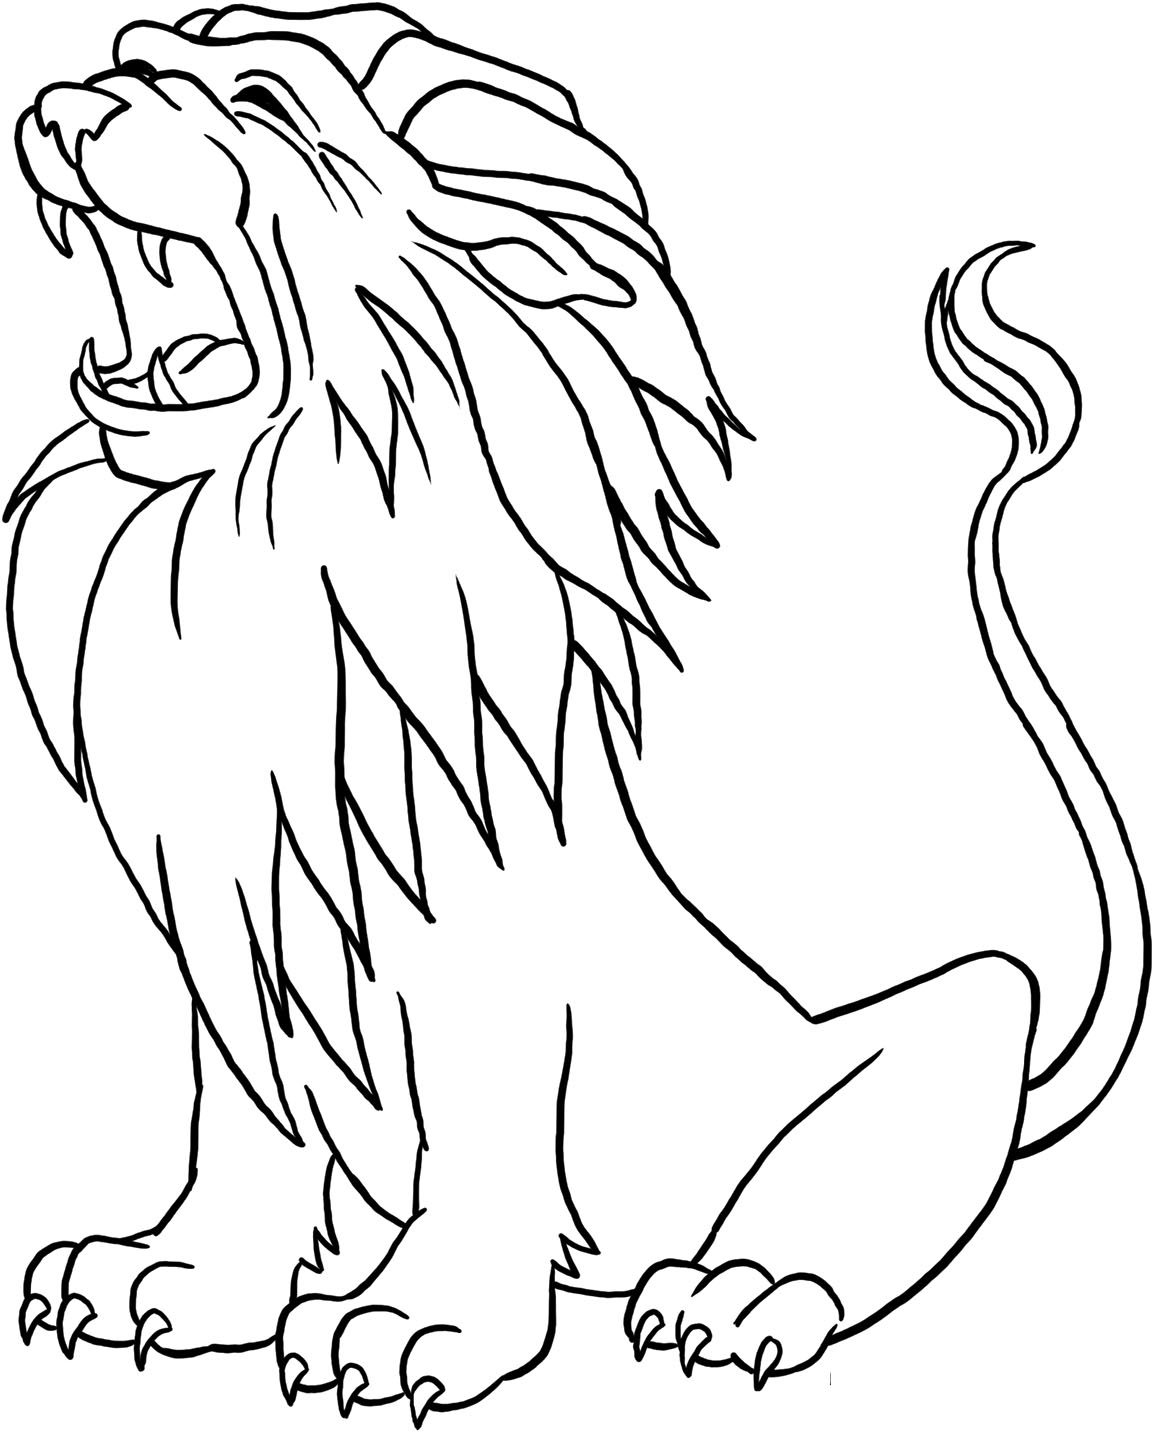 Coloriages À Imprimer : Lion, Numéro : C15A5704 tout Coloriage À Imprimer Lion